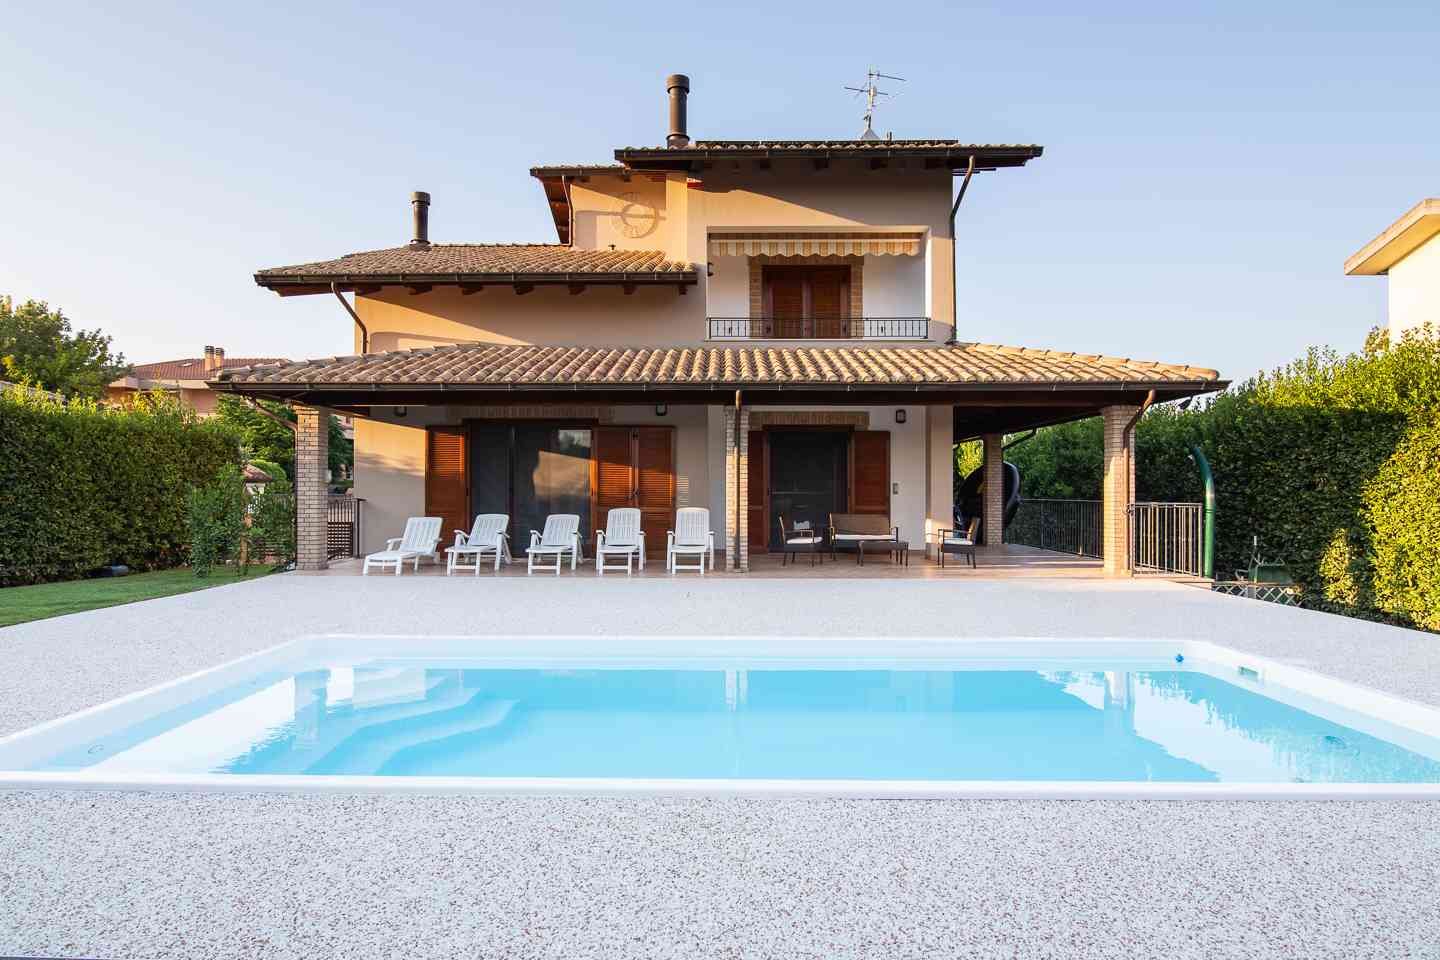 Casa indipendente Casa indipendente in vendita Collecorvino (PE), Villa Pini - Collecorvino - EUR 574.653 410